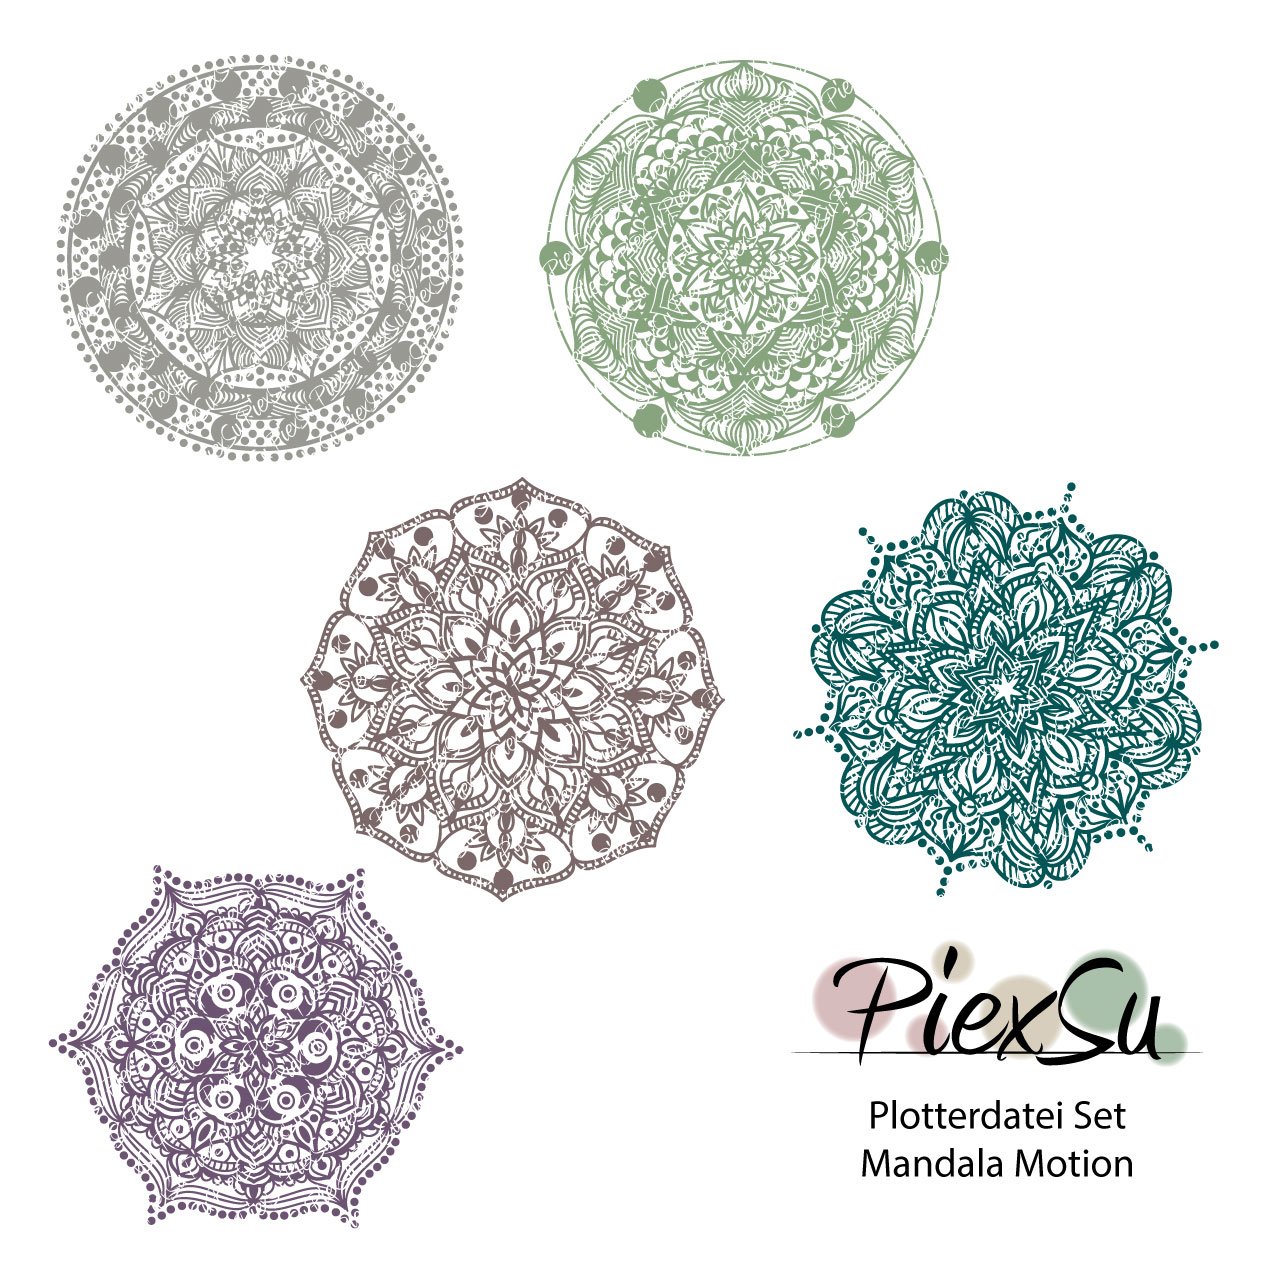 PiexSu-Plotterdatei-Mandala-Motion-dxf-svg-plotten-Titelbild